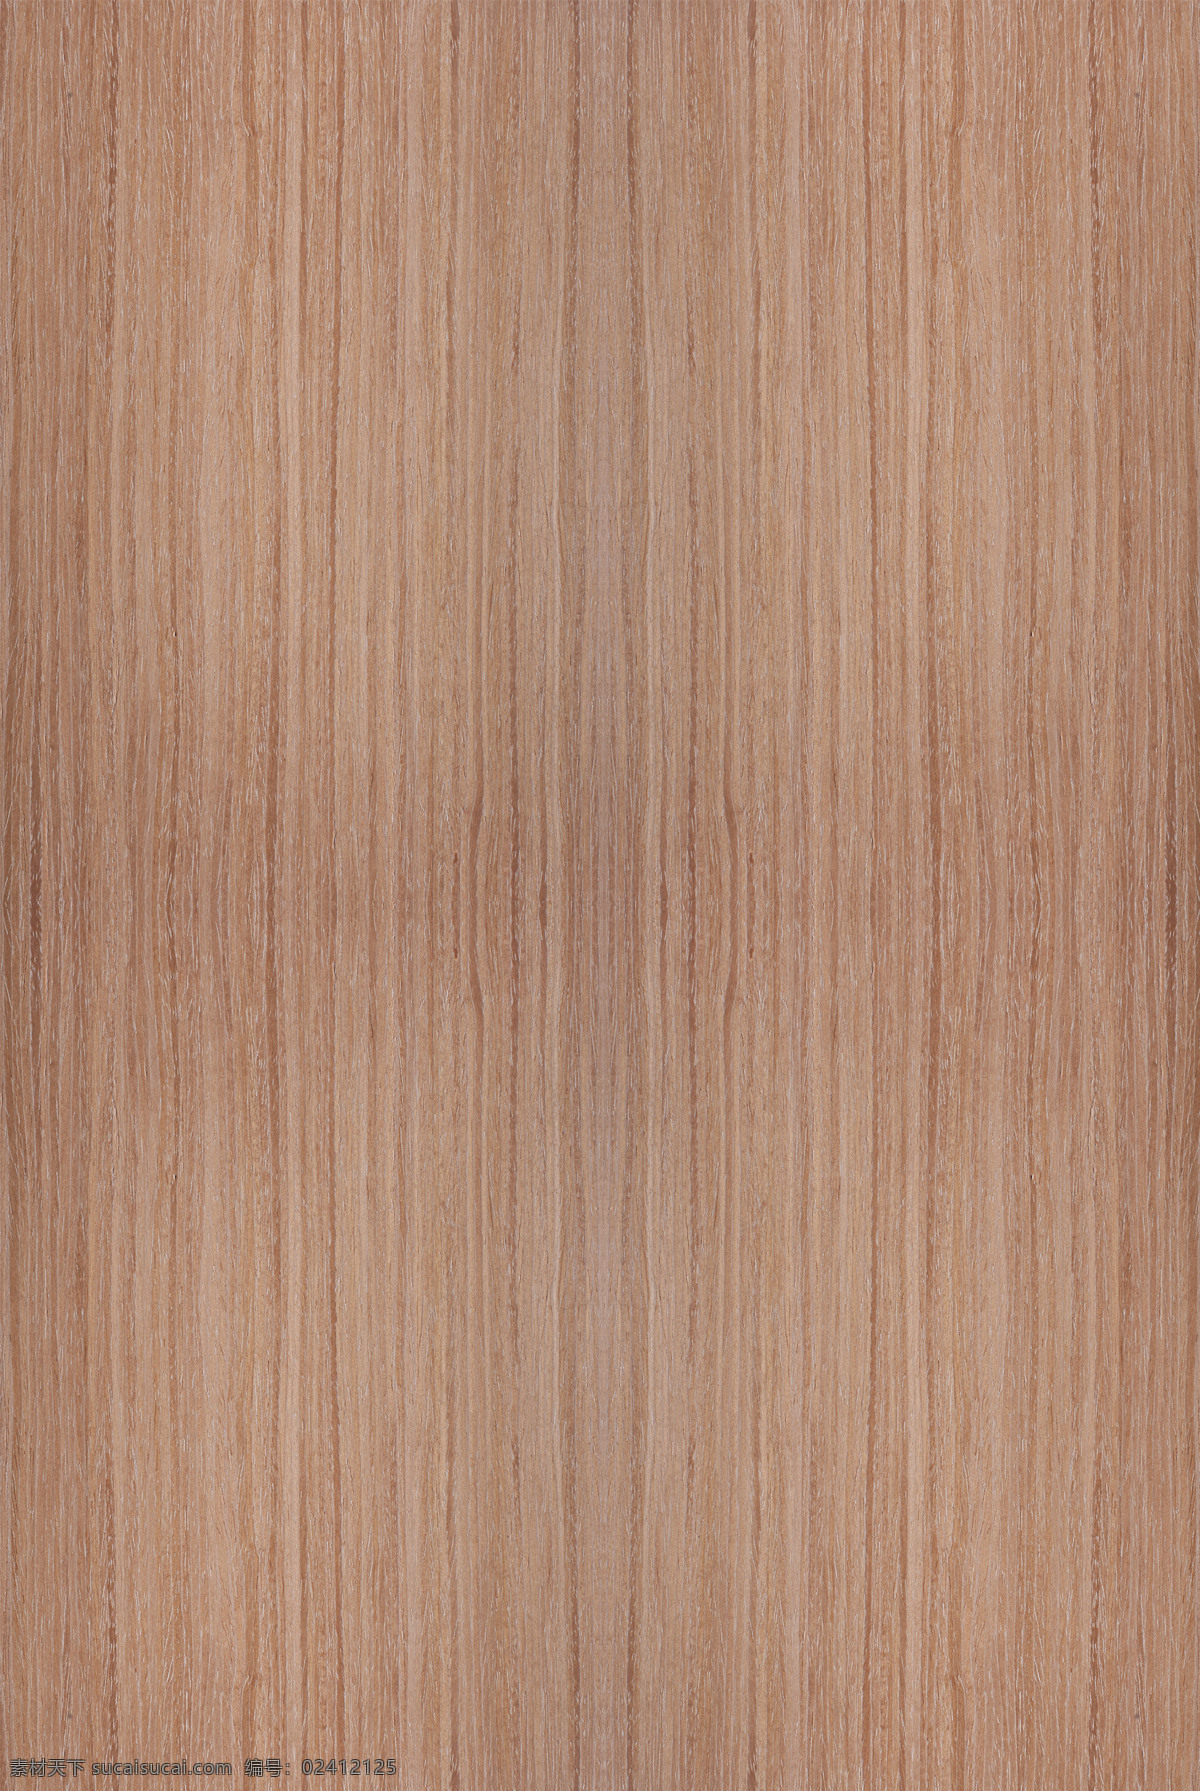 木纹贴图 棕杏木 木皮贴图 木纹 高清贴图 3d贴图 无缝拼图 uv板 木饰面板 3d设计 其他模型